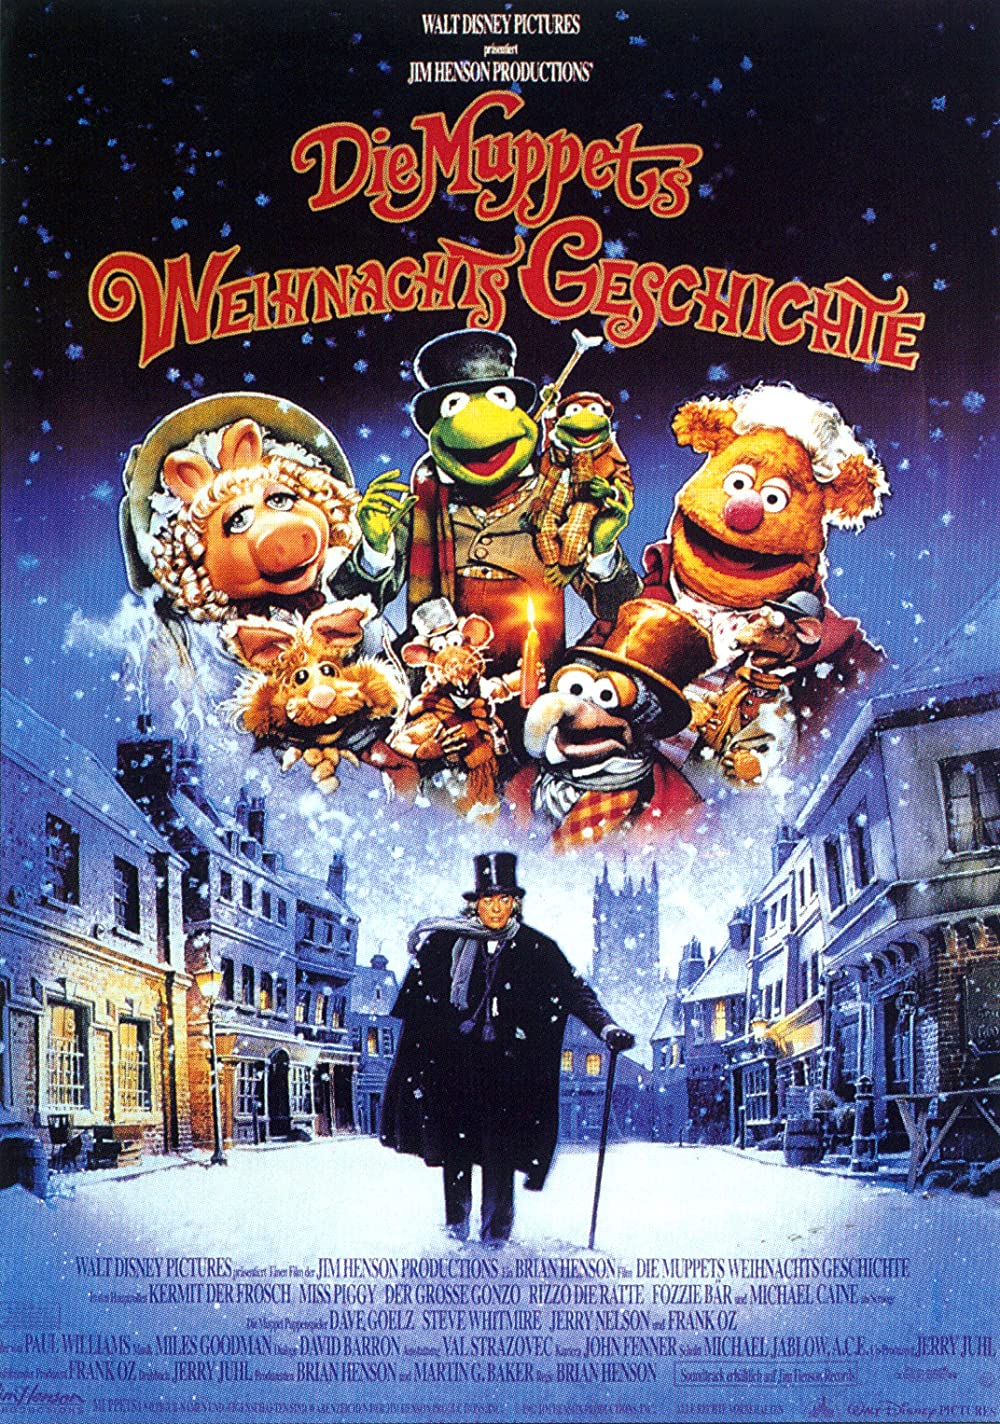 Filmbeschreibung zu The Muppet Christmas Carol